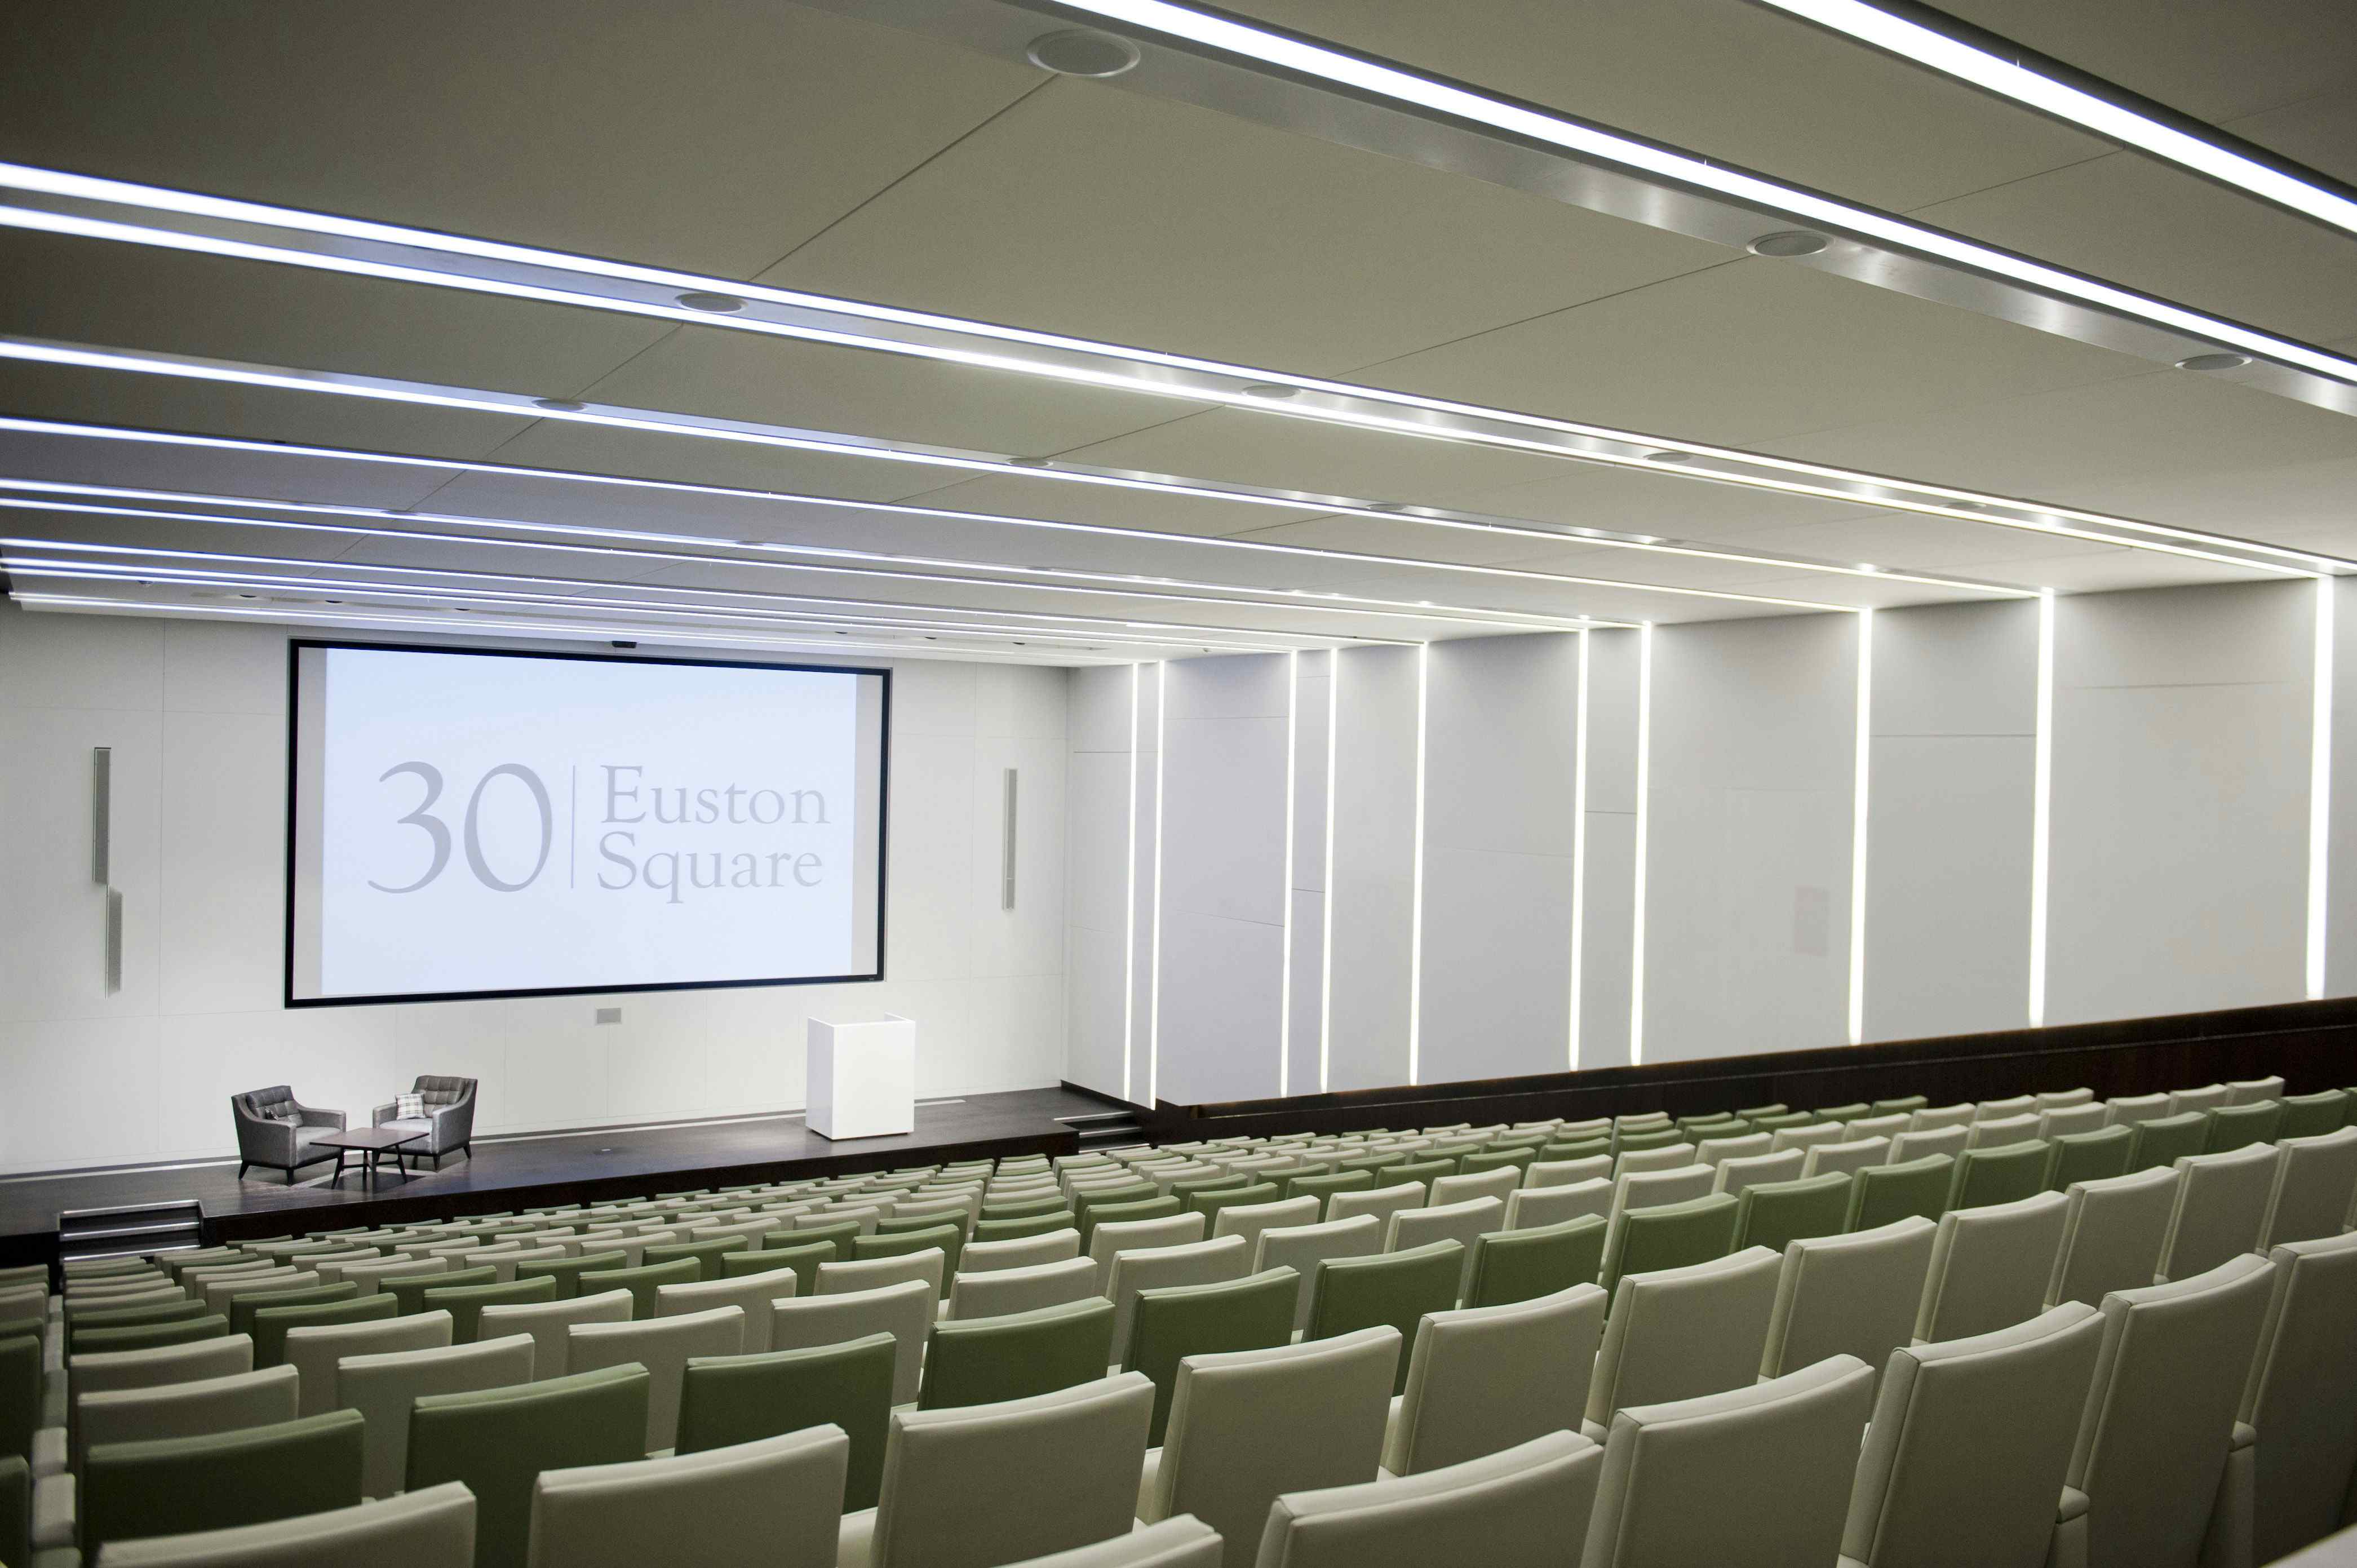 Auditorium & Event Space, 30 Euston Square